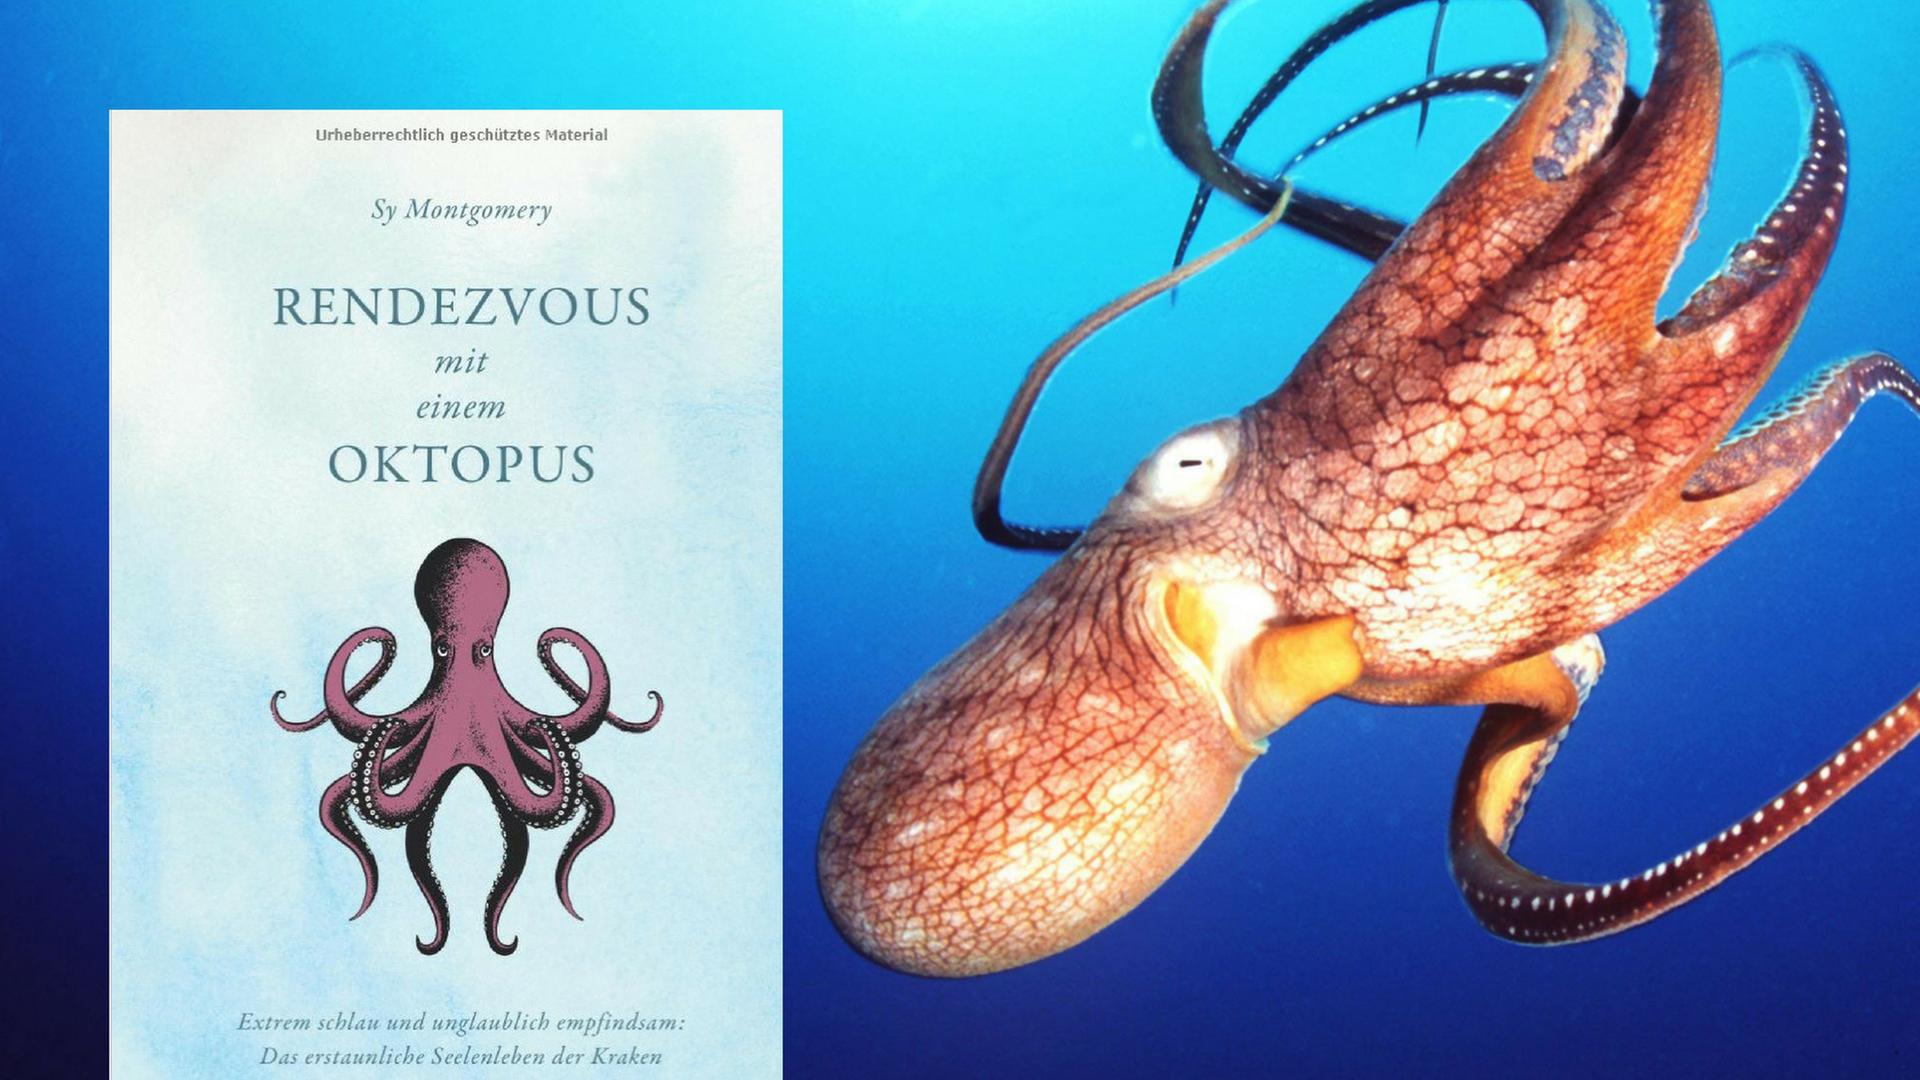 Buchcover: "Rendezvous mit einem Oktopus"